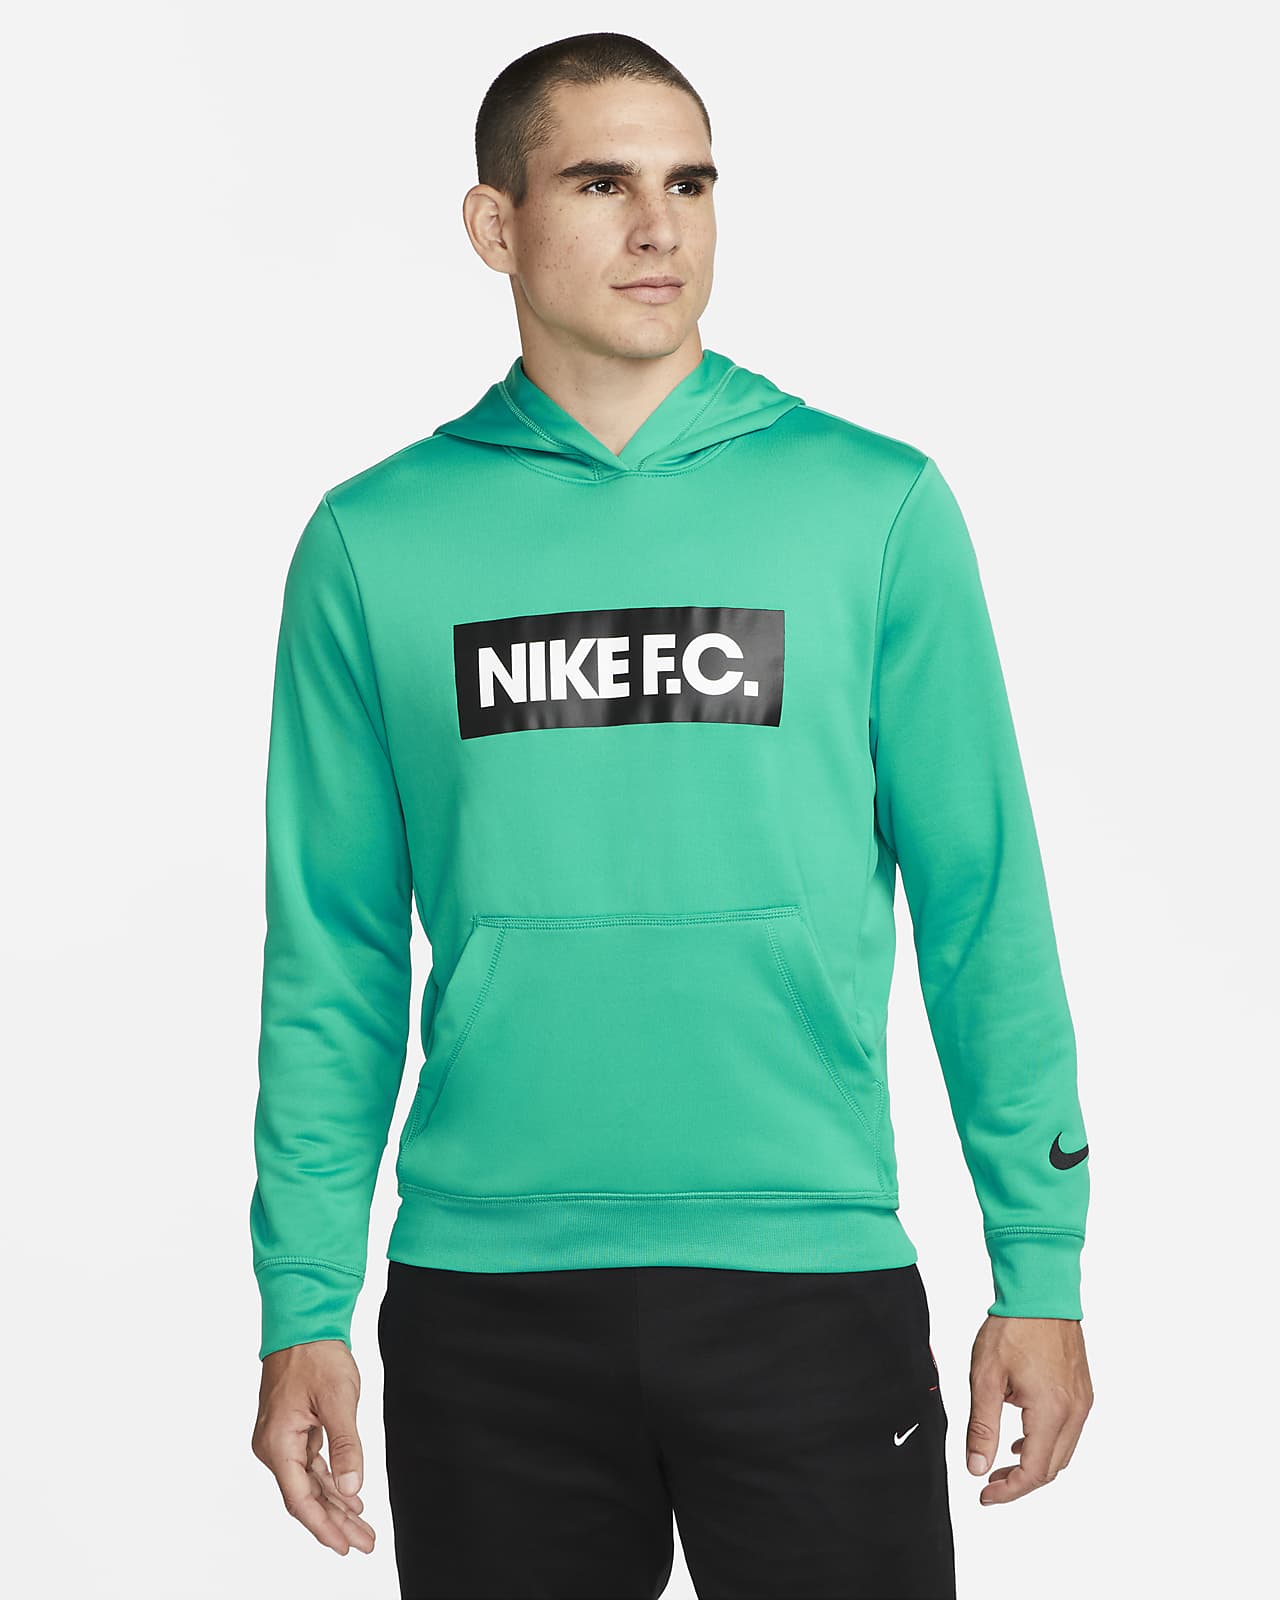 Nike F.C. Men's Soccer Hoodie